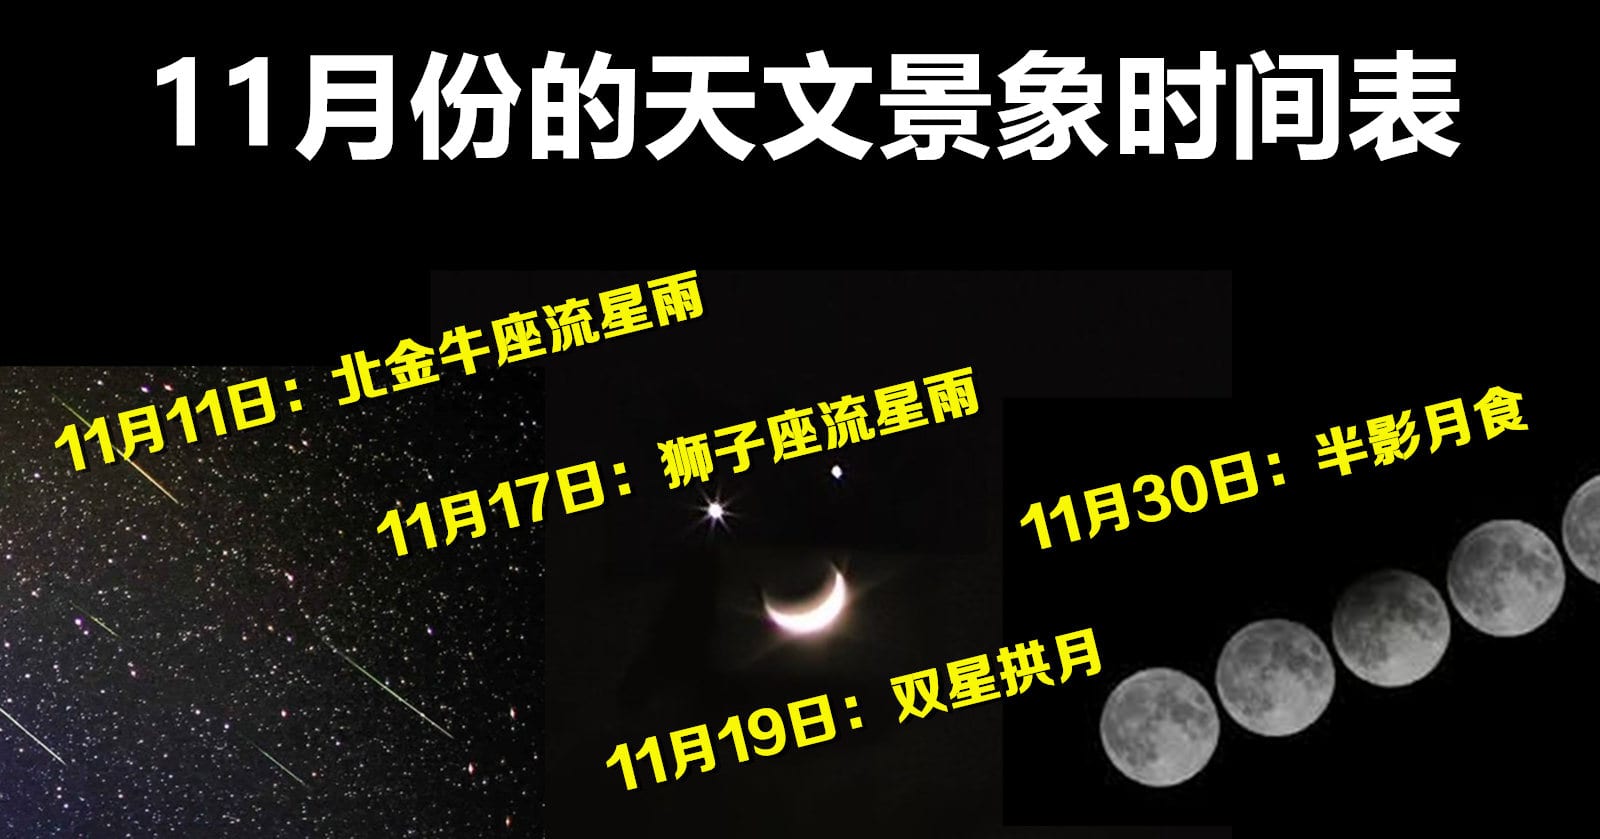 11月份天文爱好者可观赏到流星雨和半影月食